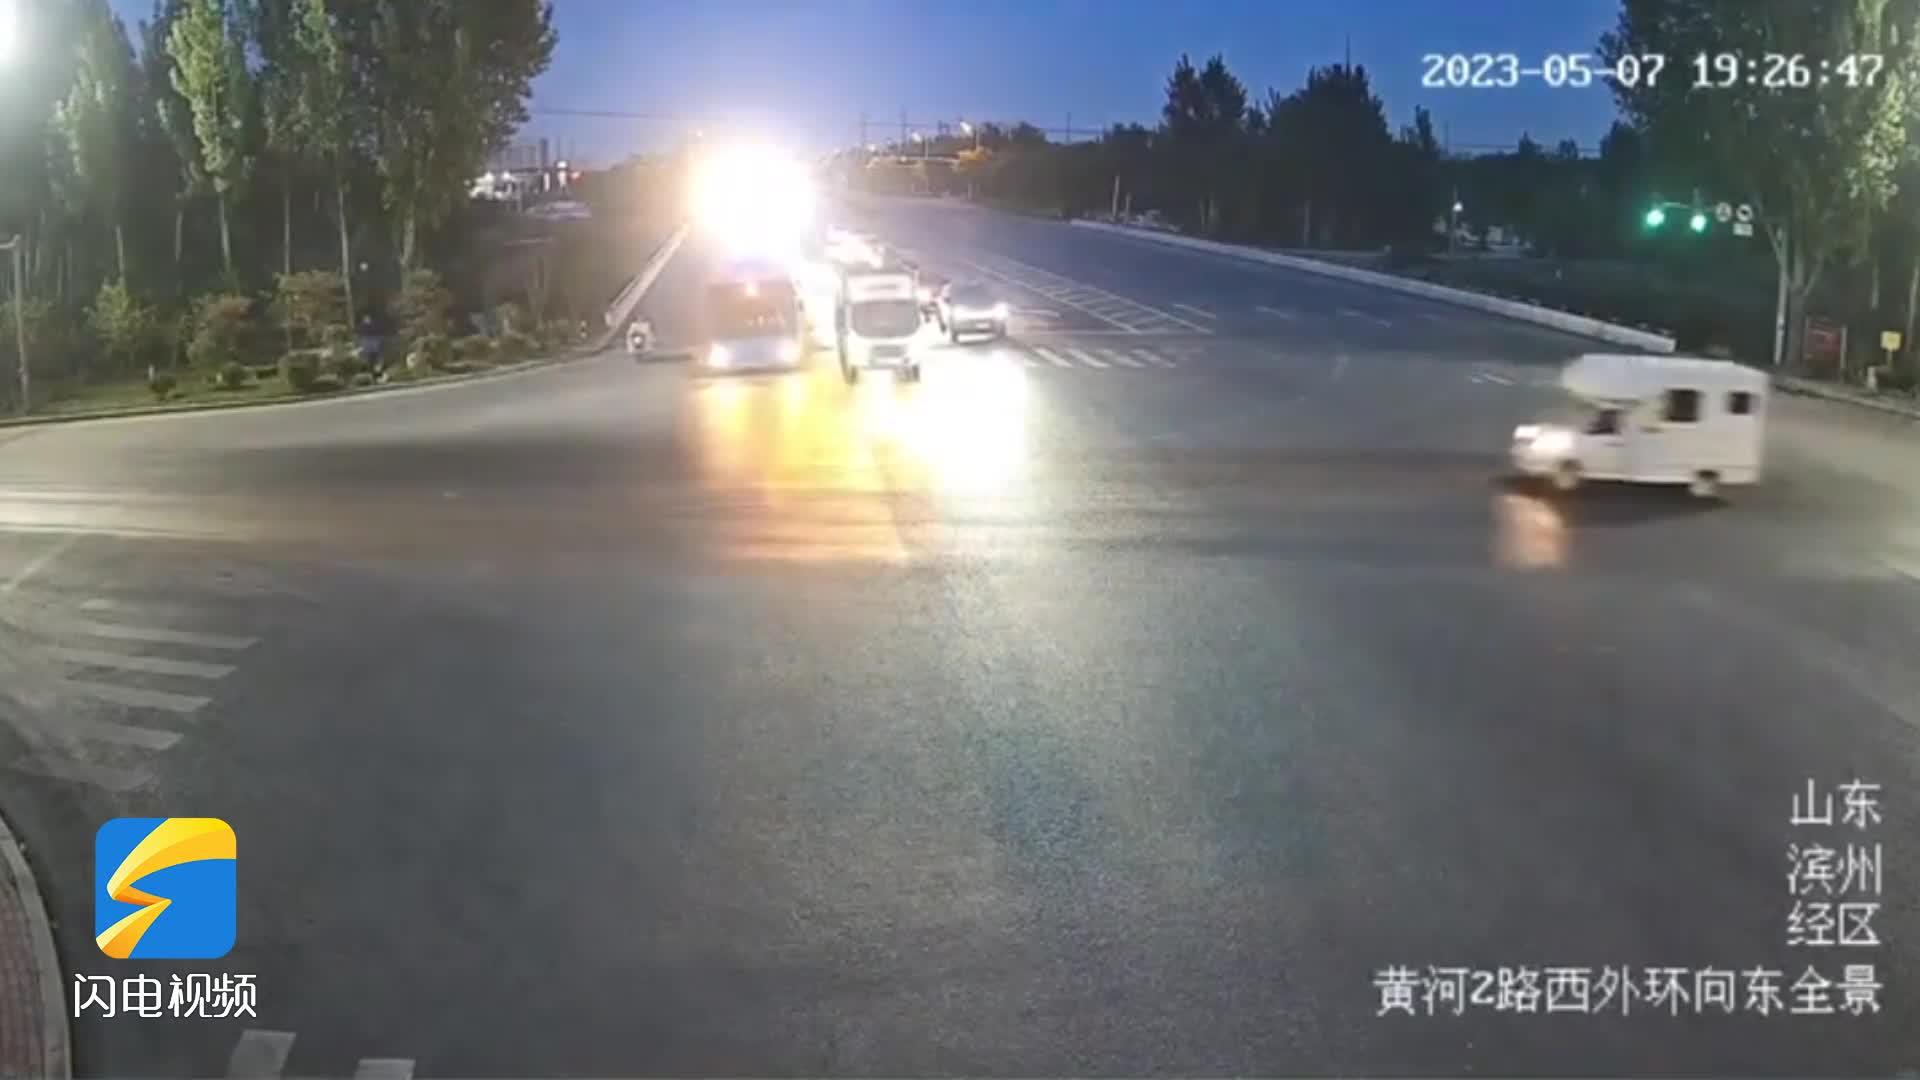 一个闯红灯 一个未按规定车道行驶 结果双双“受伤”